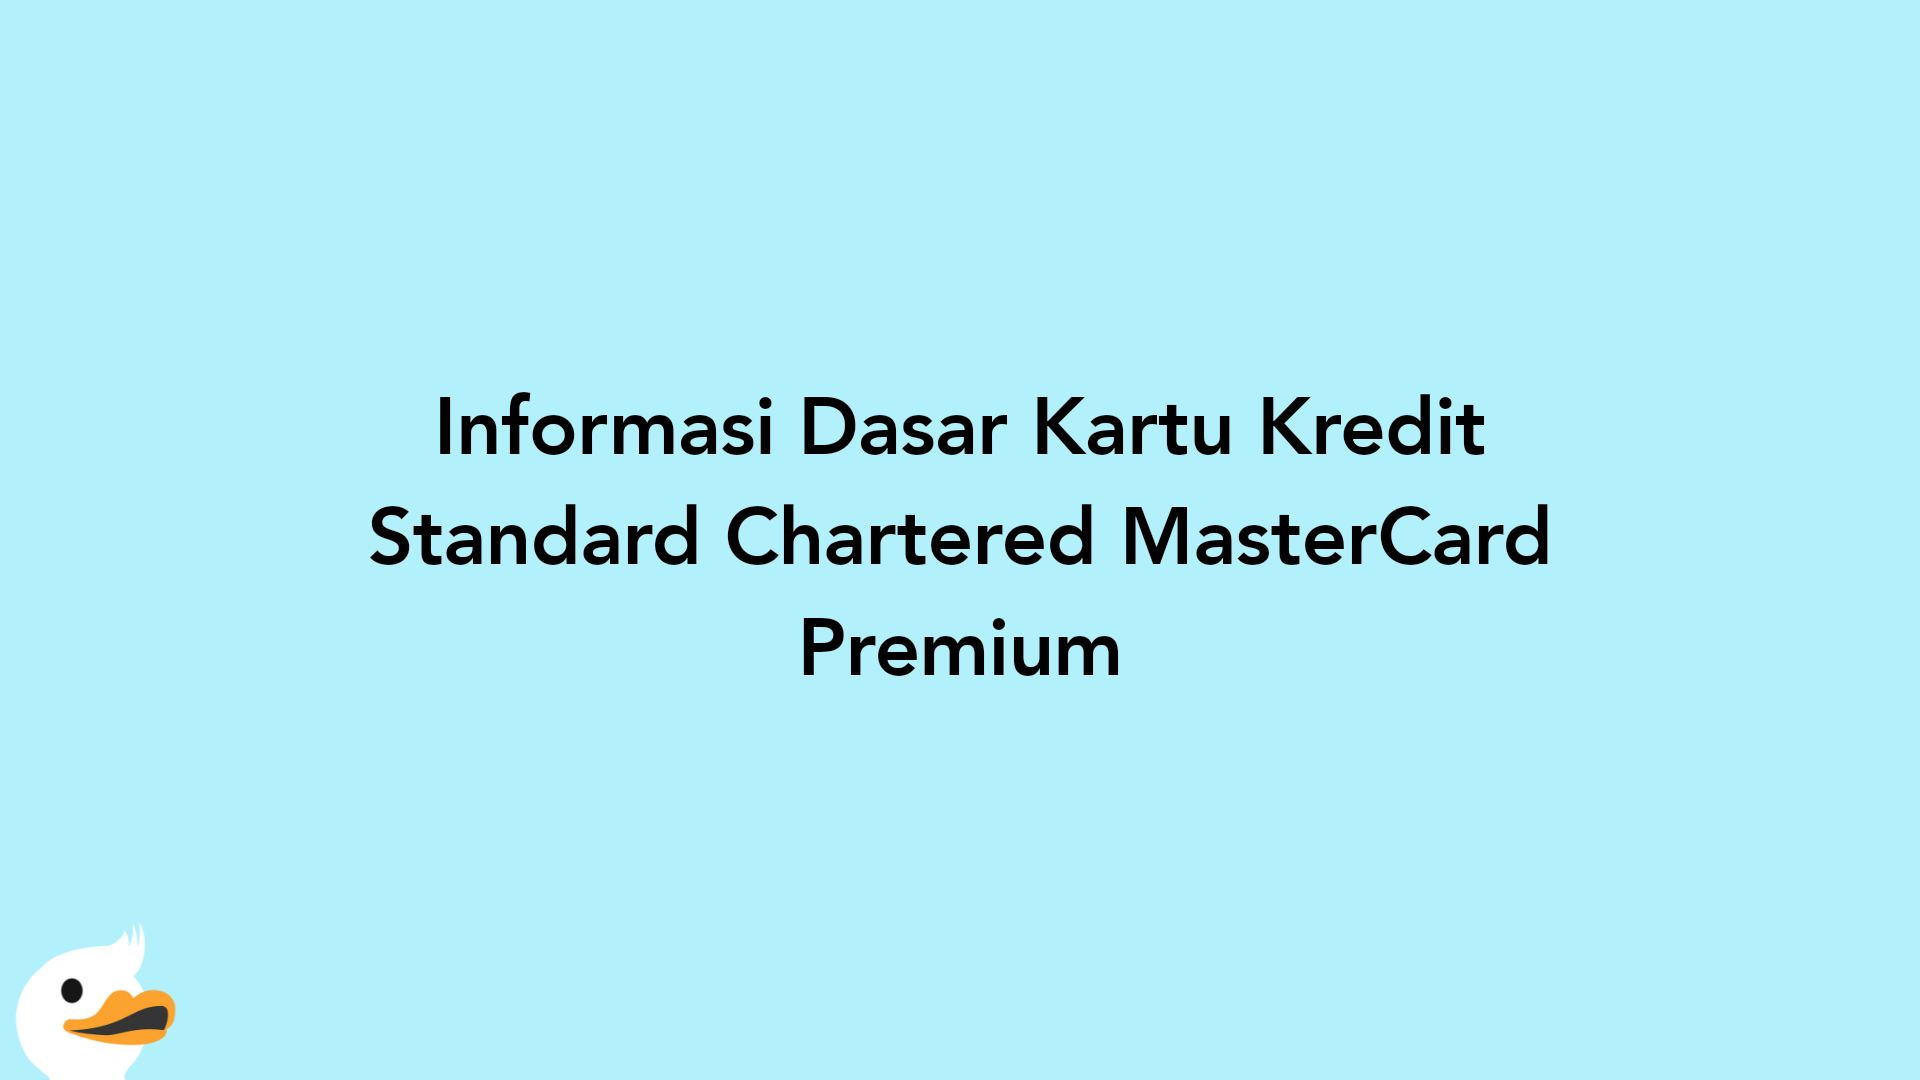 Informasi Dasar Kartu Kredit Standard Chartered MasterCard Premium